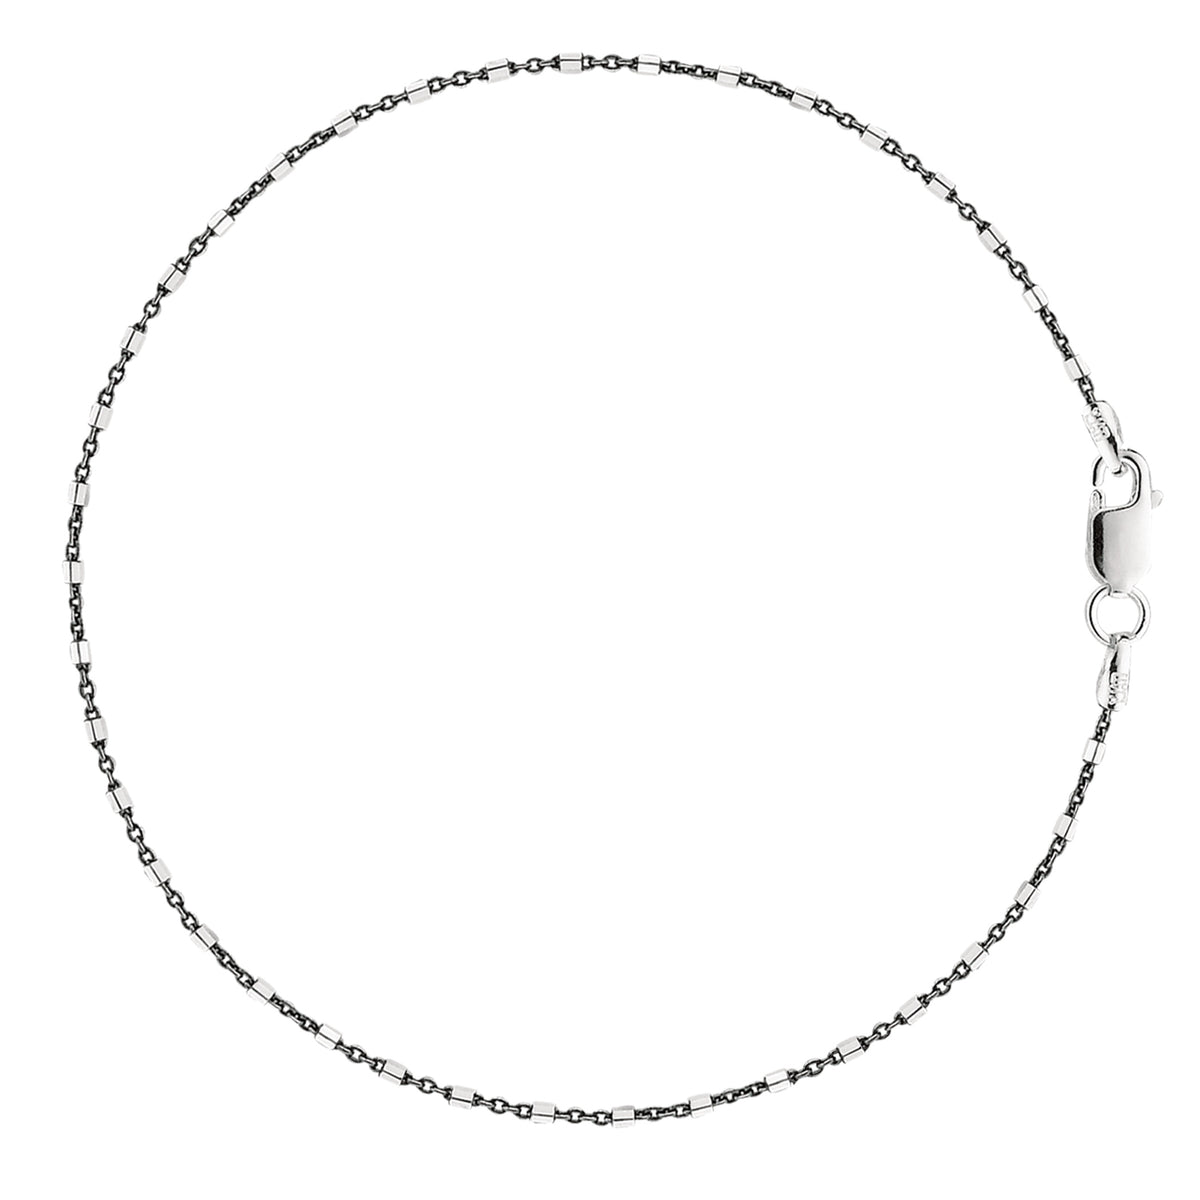 Sort og hvid Barrel Bead Style Chain Anklet I Sterling Sølv fine designer smykker til mænd og kvinder